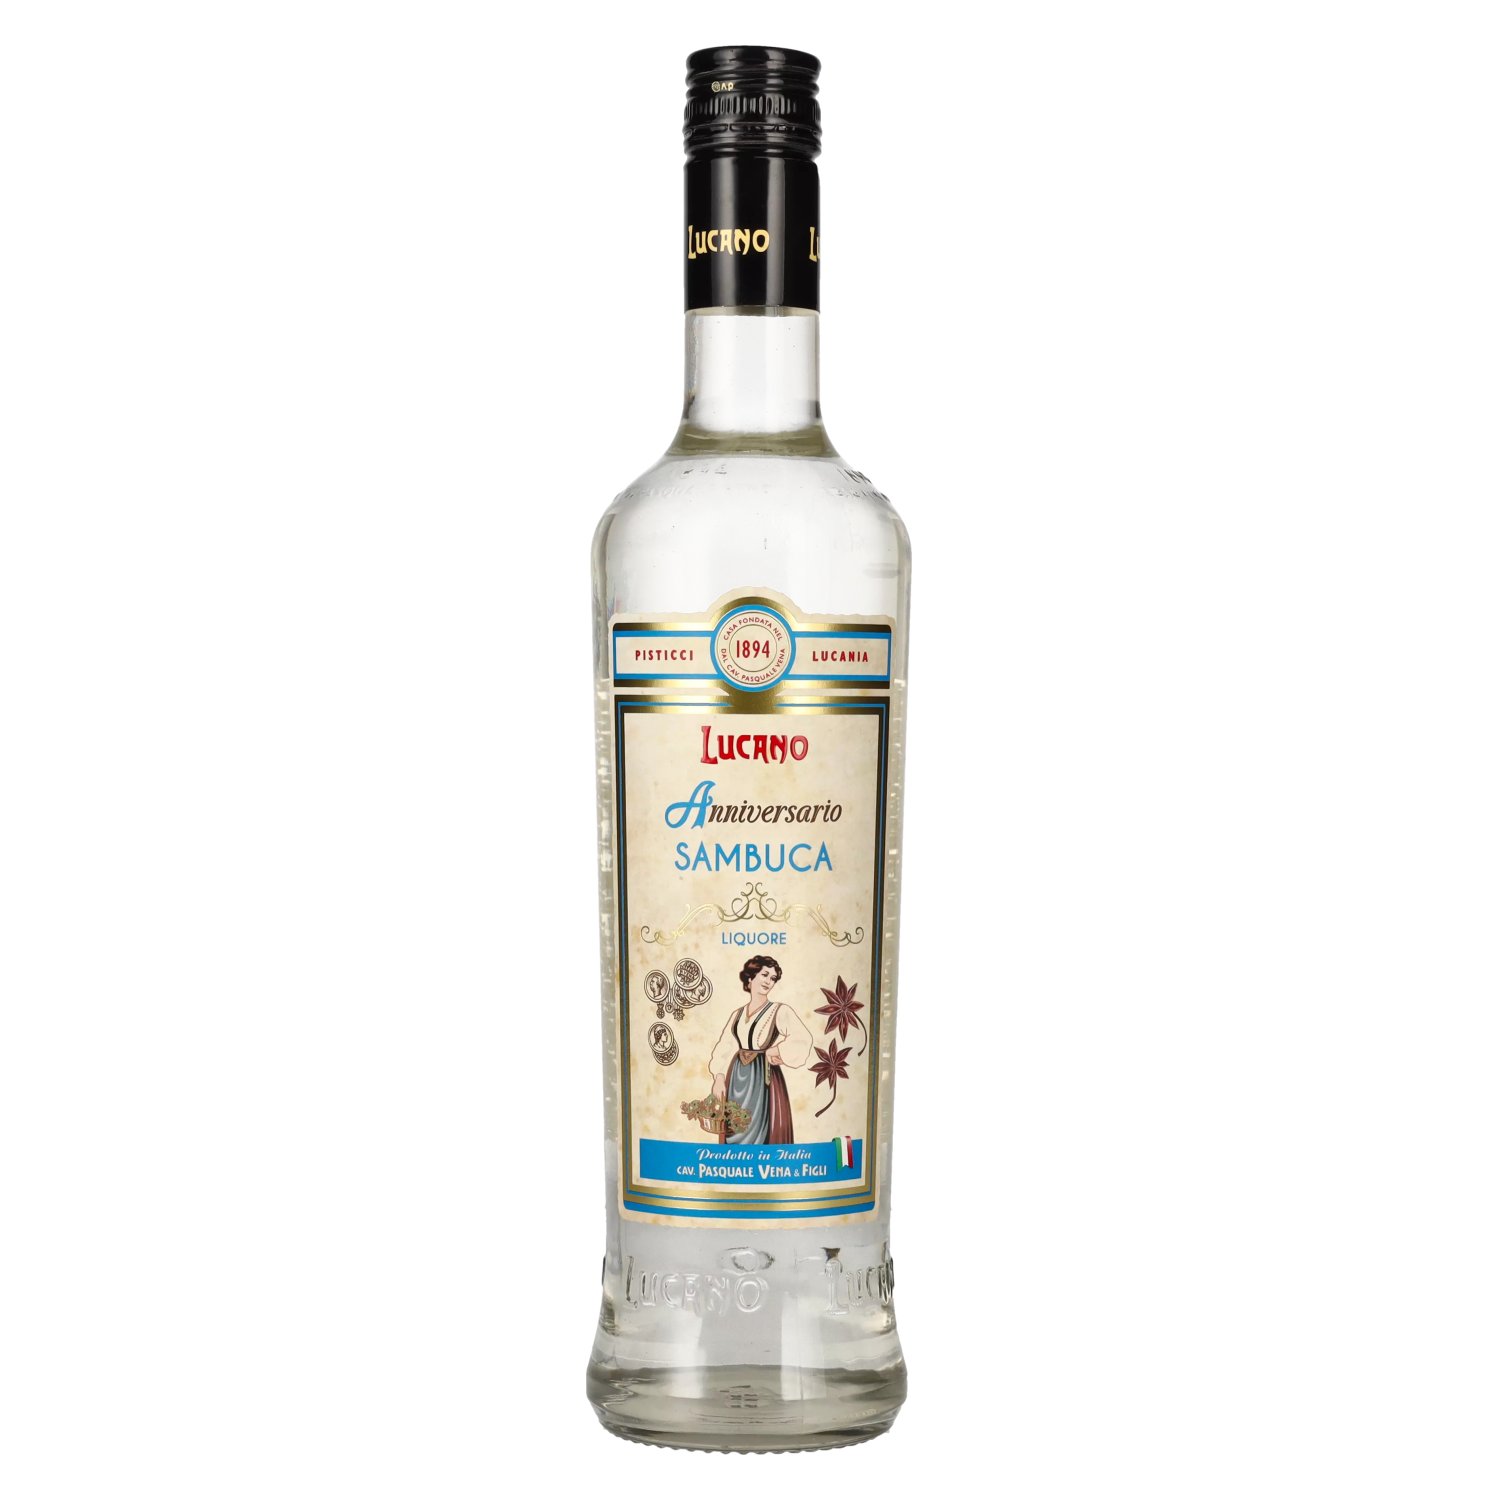 Lucano Sambuca Liquore 40% delicando Vol. - 0,7l